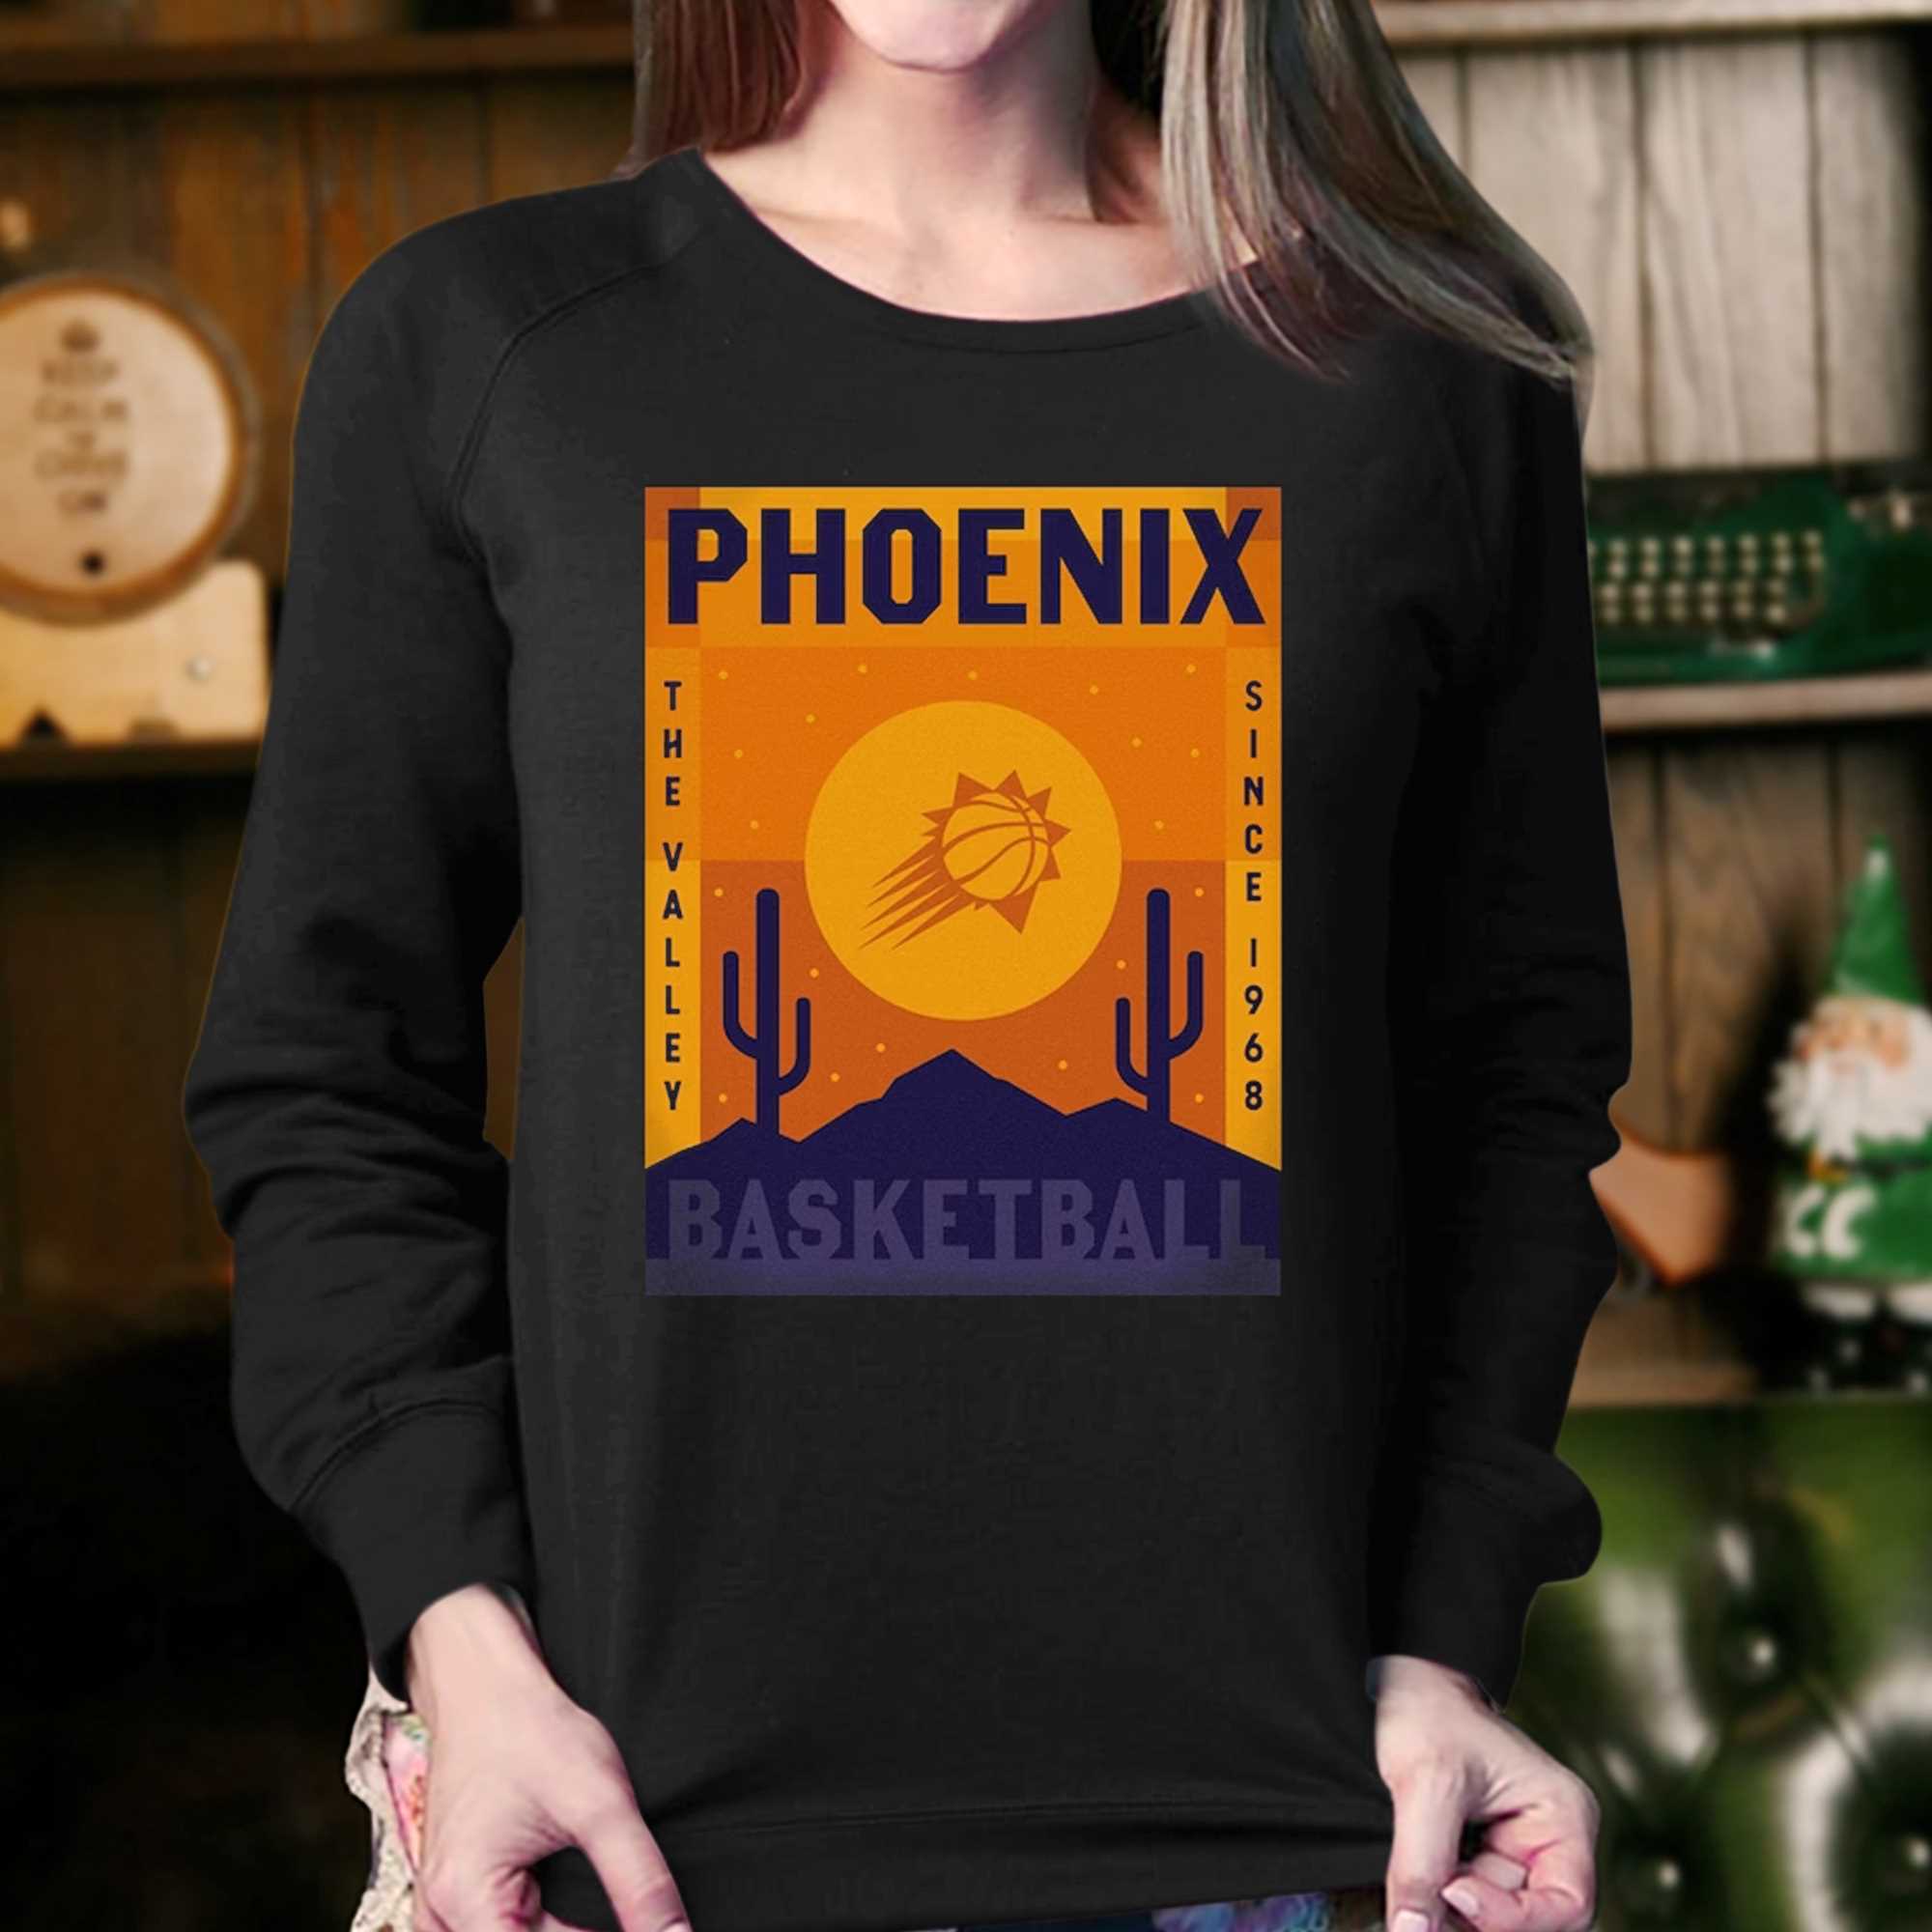 phoenix suns sweatshirt vintage